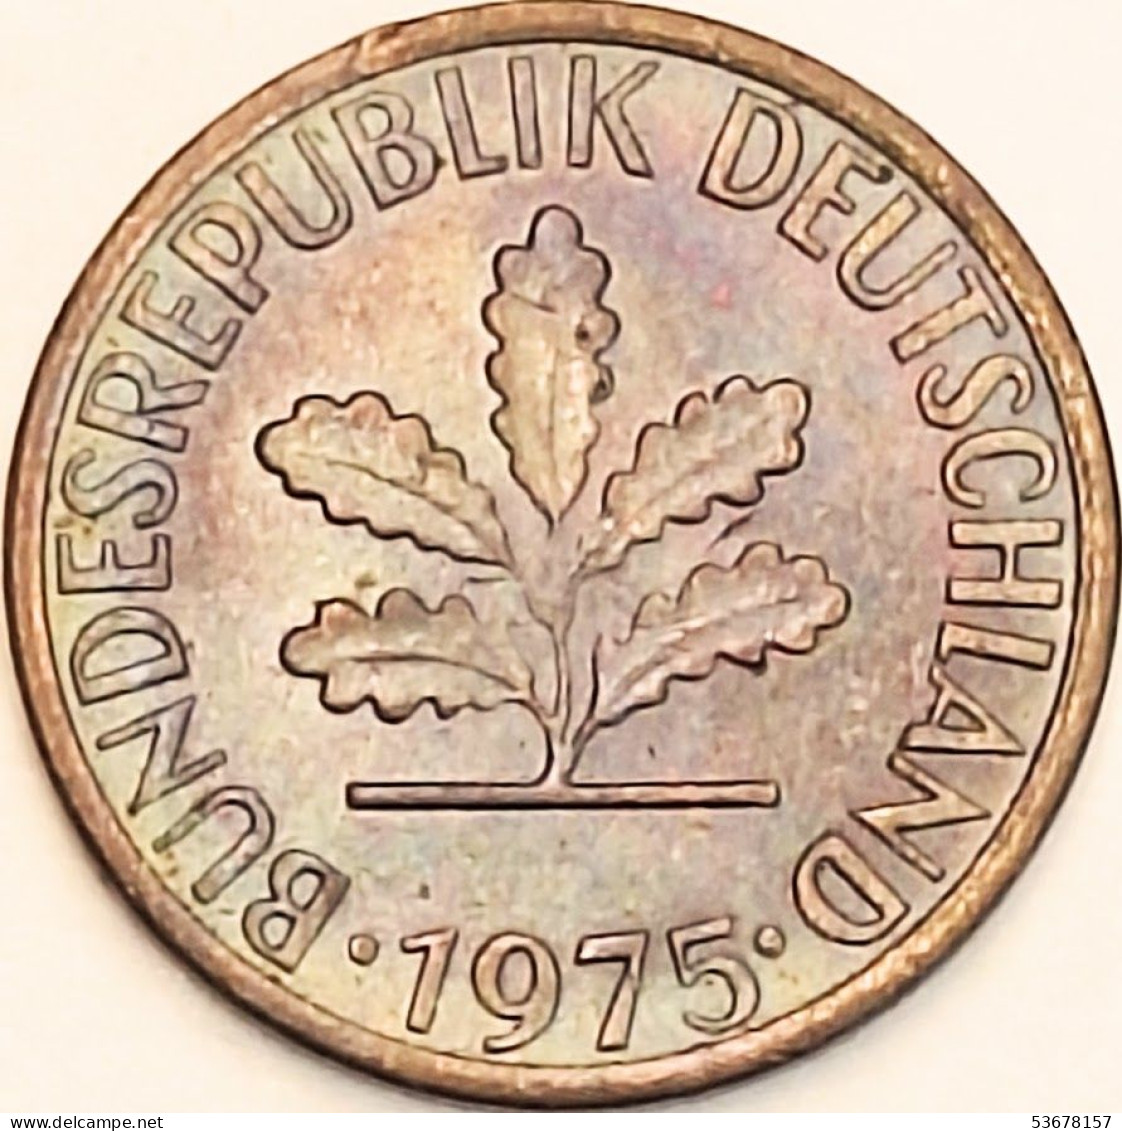 Germany Federal Republic - Pfennig 1975 F, KM# 105 (#4468) - 1 Pfennig